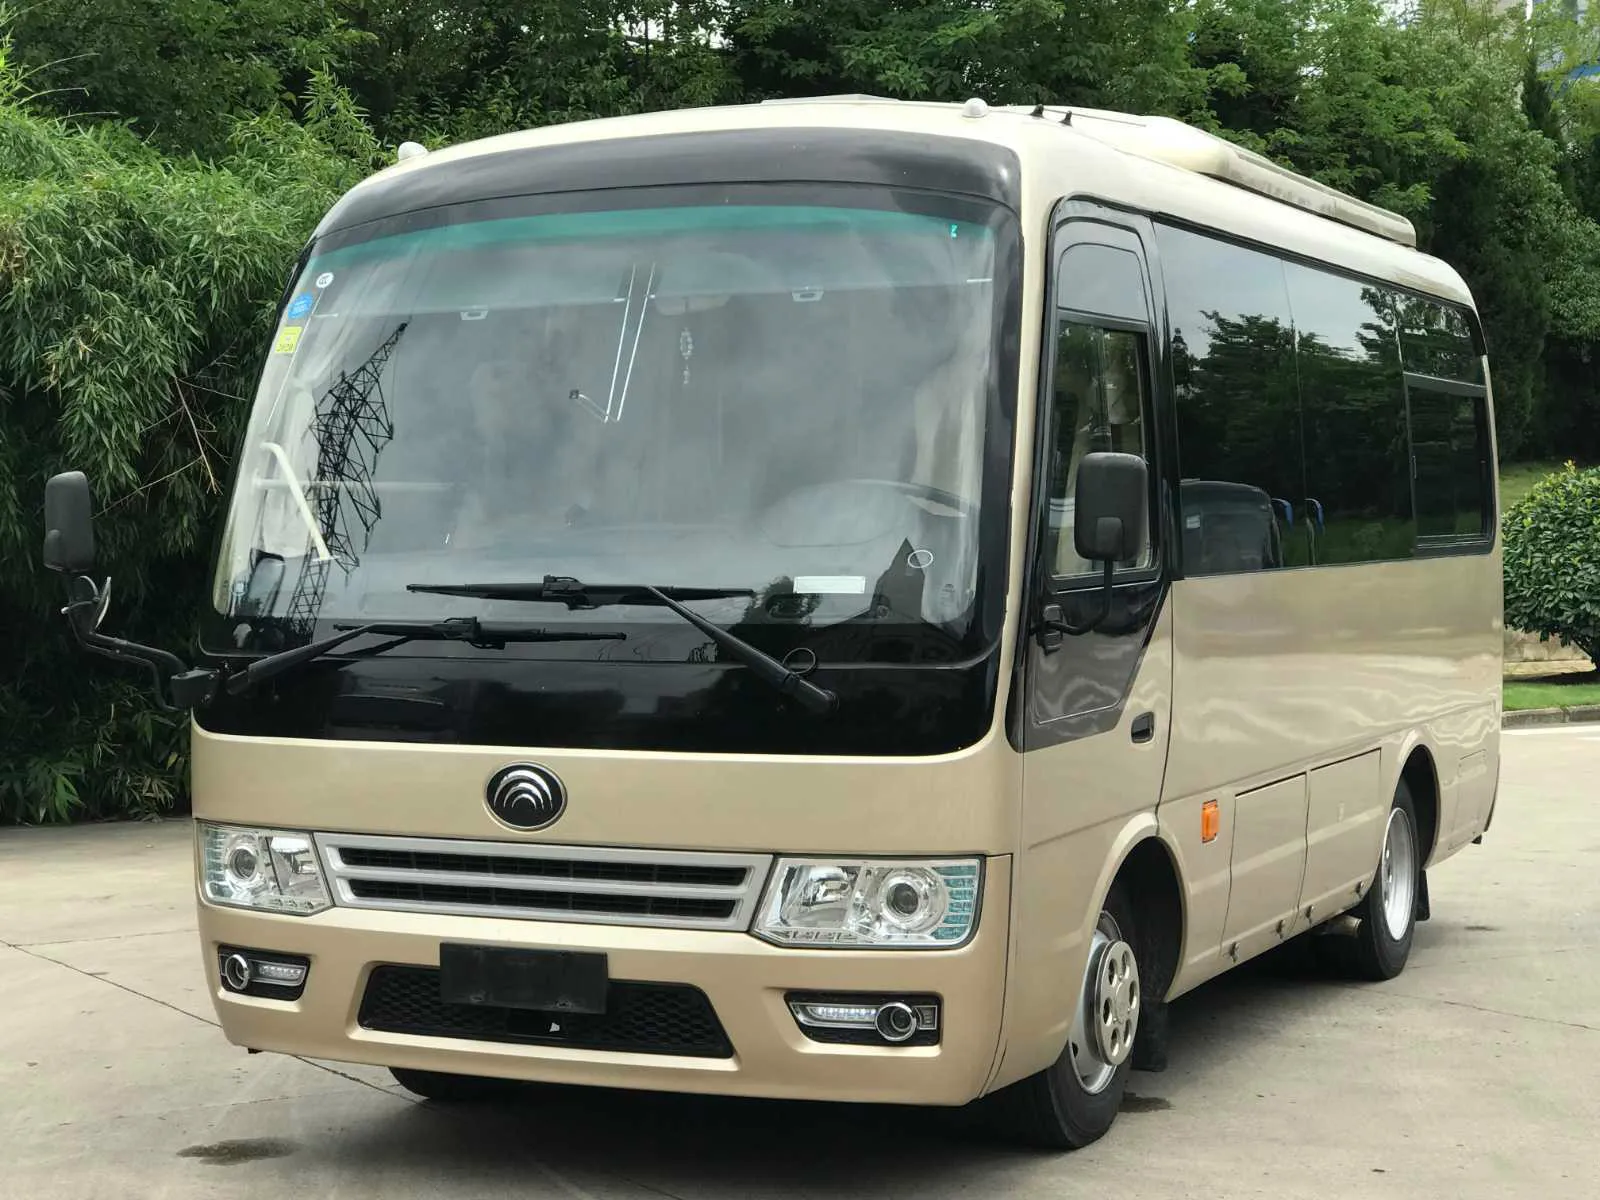 новое прибытие yutong подержанный мини-автобус для 19 пассажирских  дизельных передний двигатель правый руль автобусы подержанные для продажи|  Alibaba.com